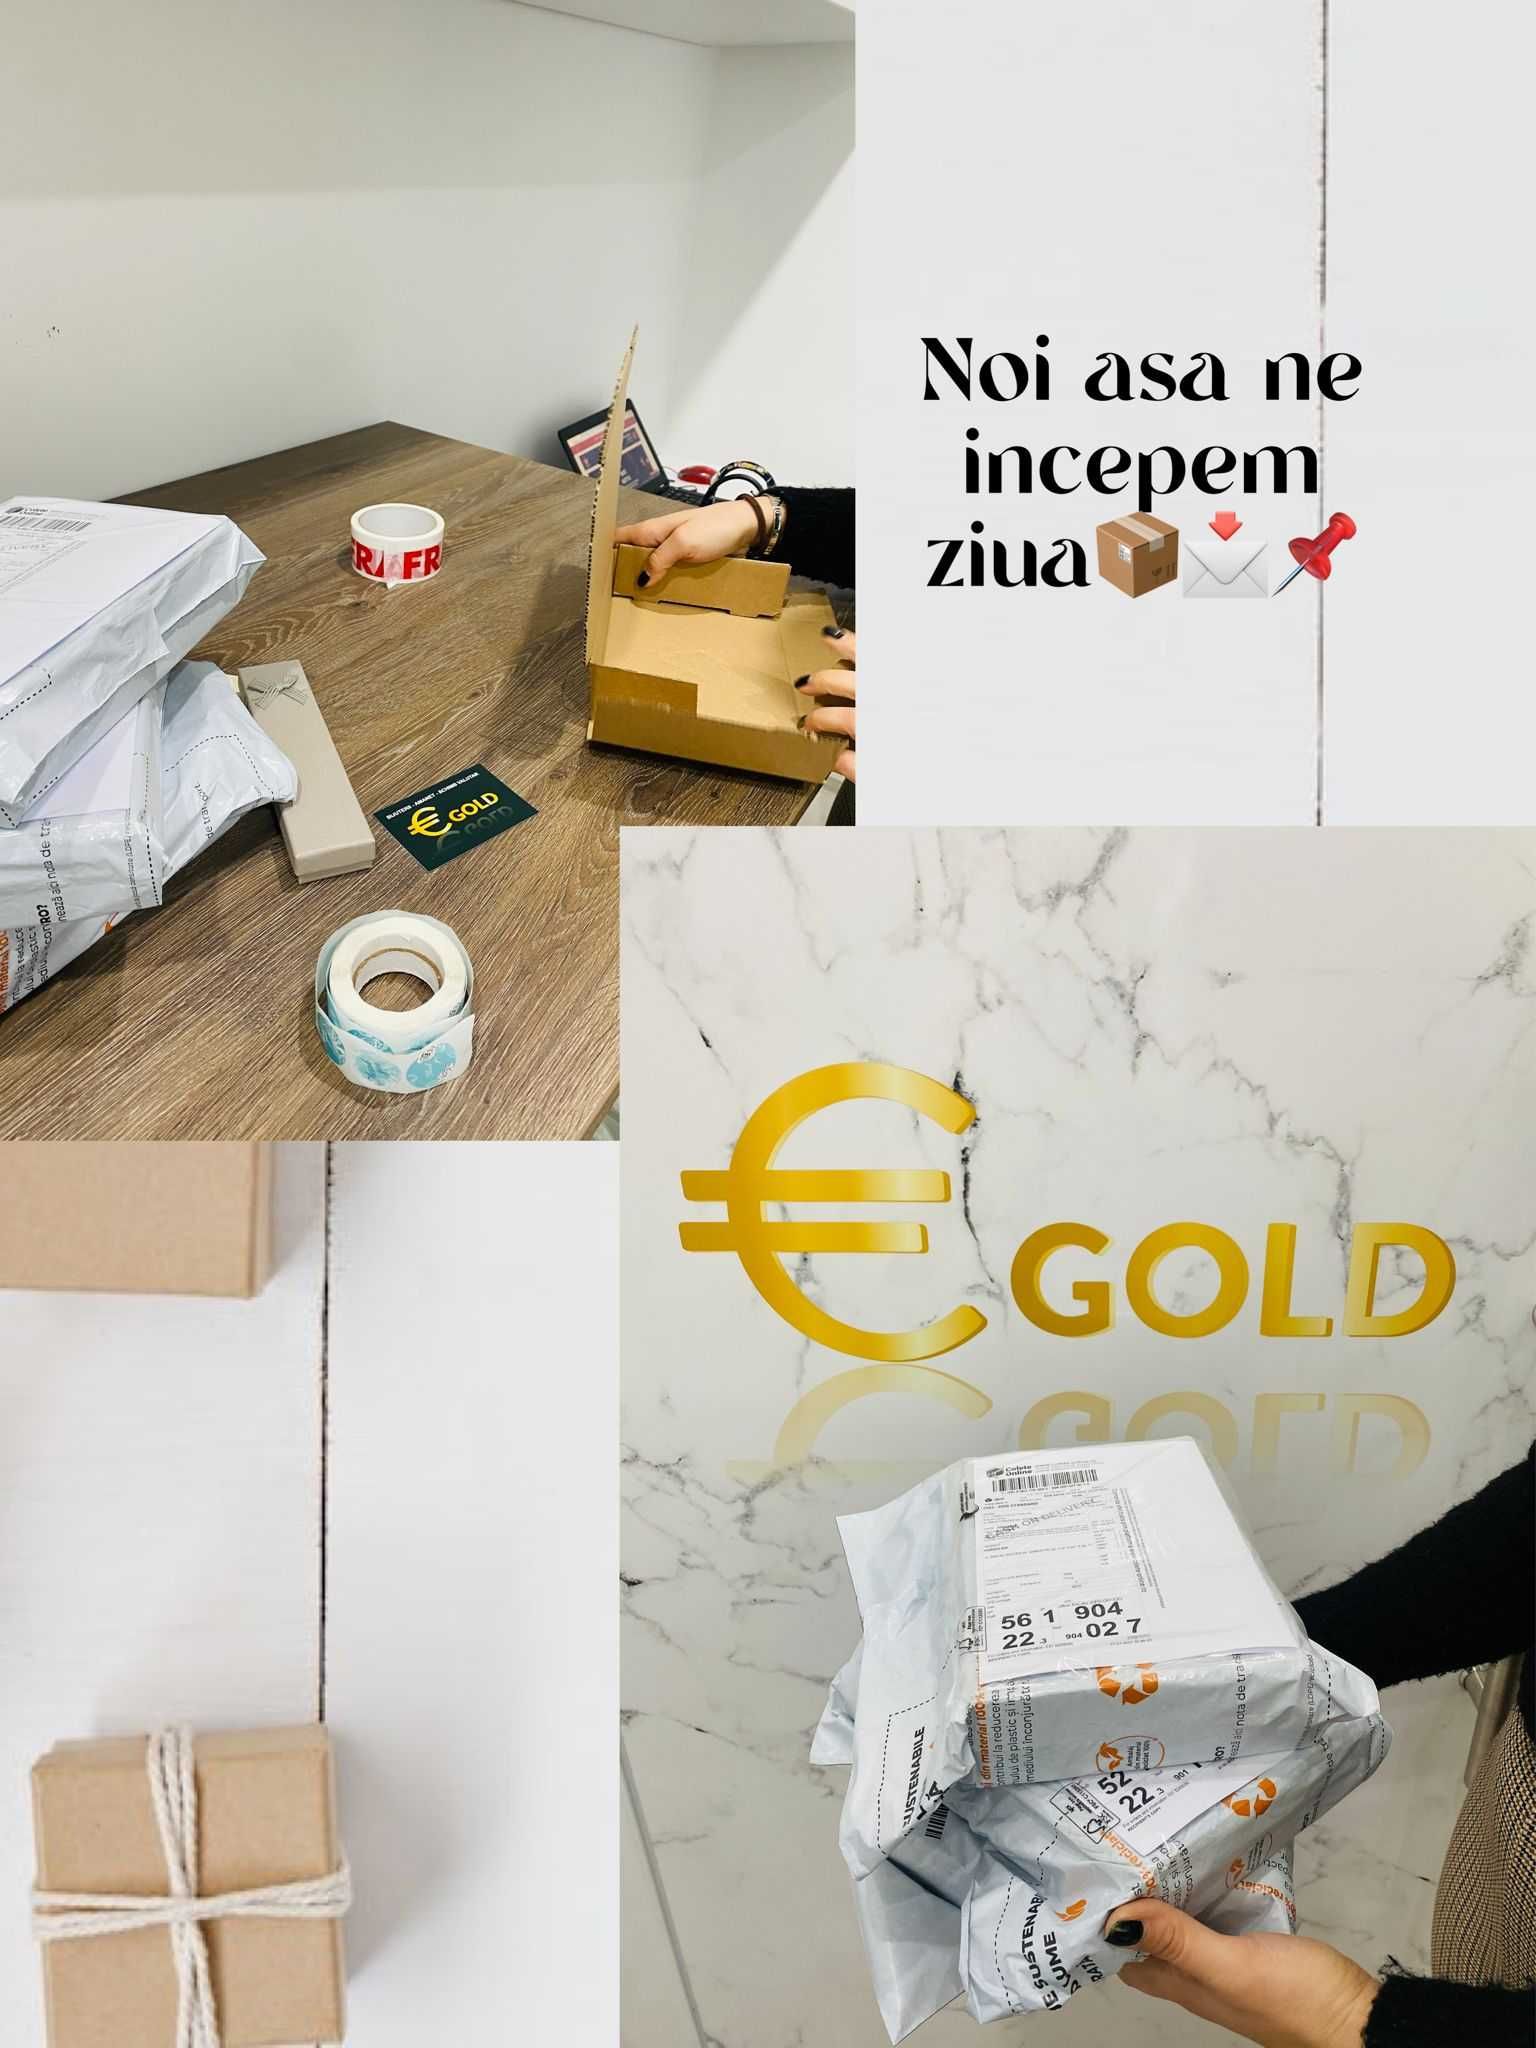 (8105) Inel Aur 18k, 2,82 grame FB Bijoux Euro Gold 360 lei/gr